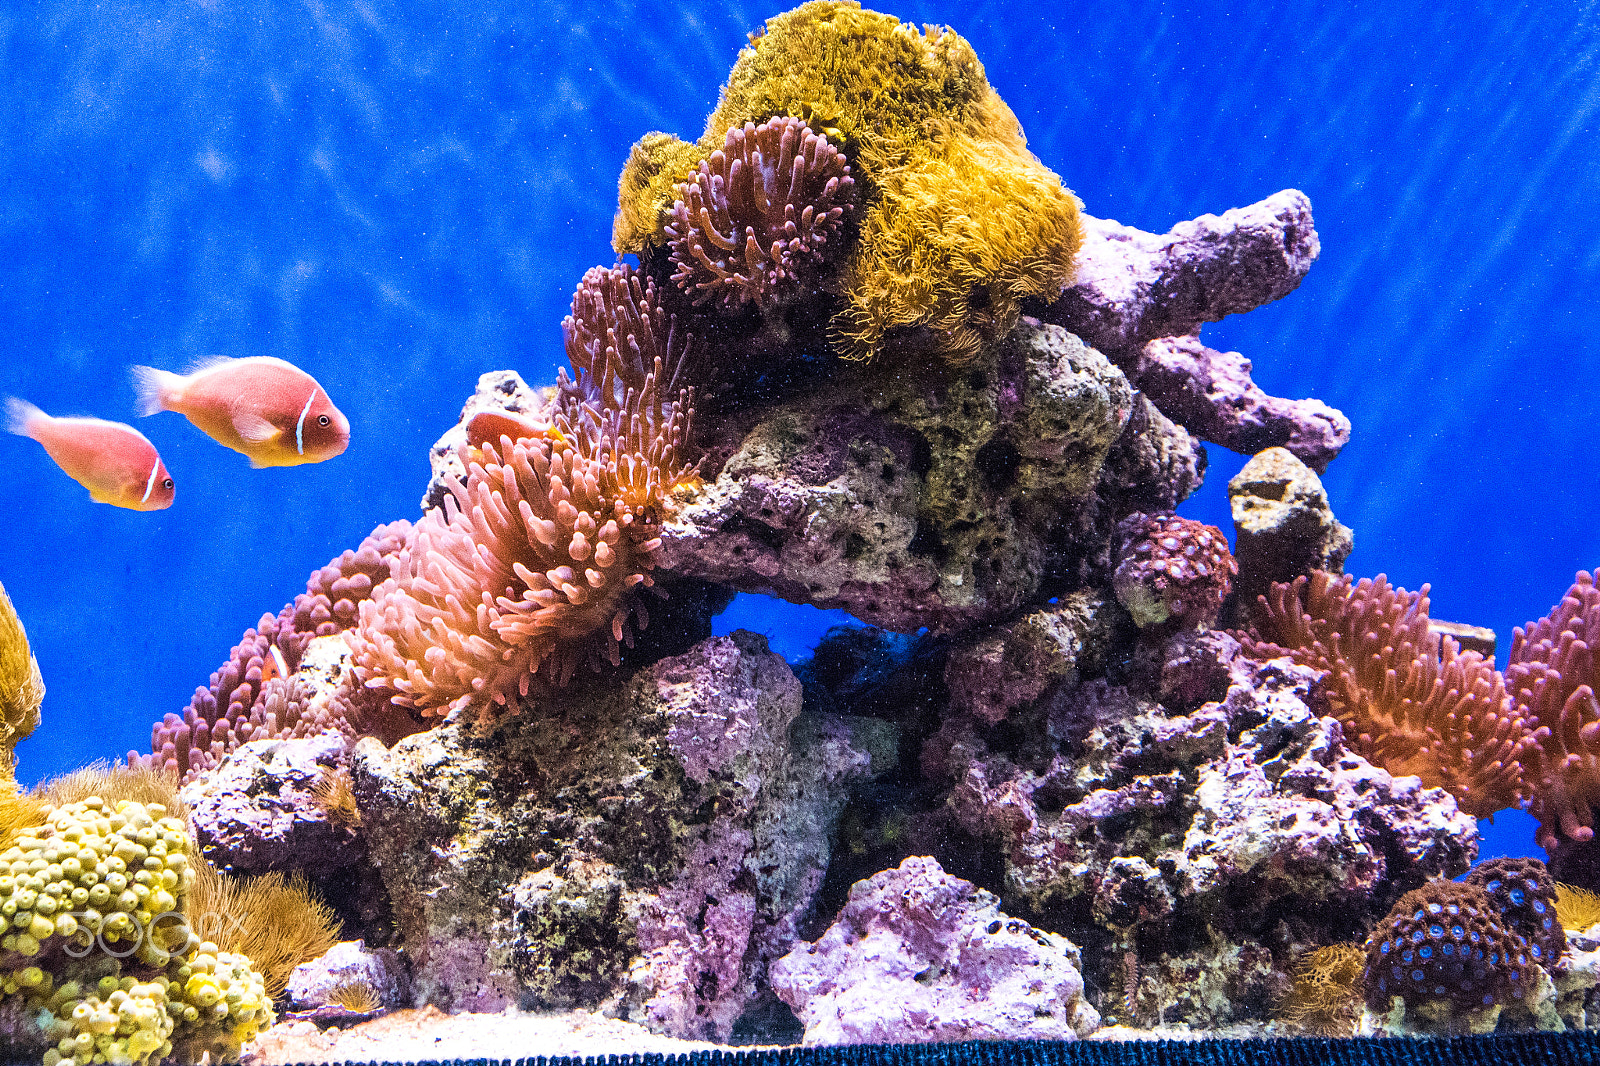 Nikon D810 + Nikon AF-S DX Nikkor 18-105mm F3.5-5.6G ED VR sample photo. Underwater coral reef arrangement in sea-world photography